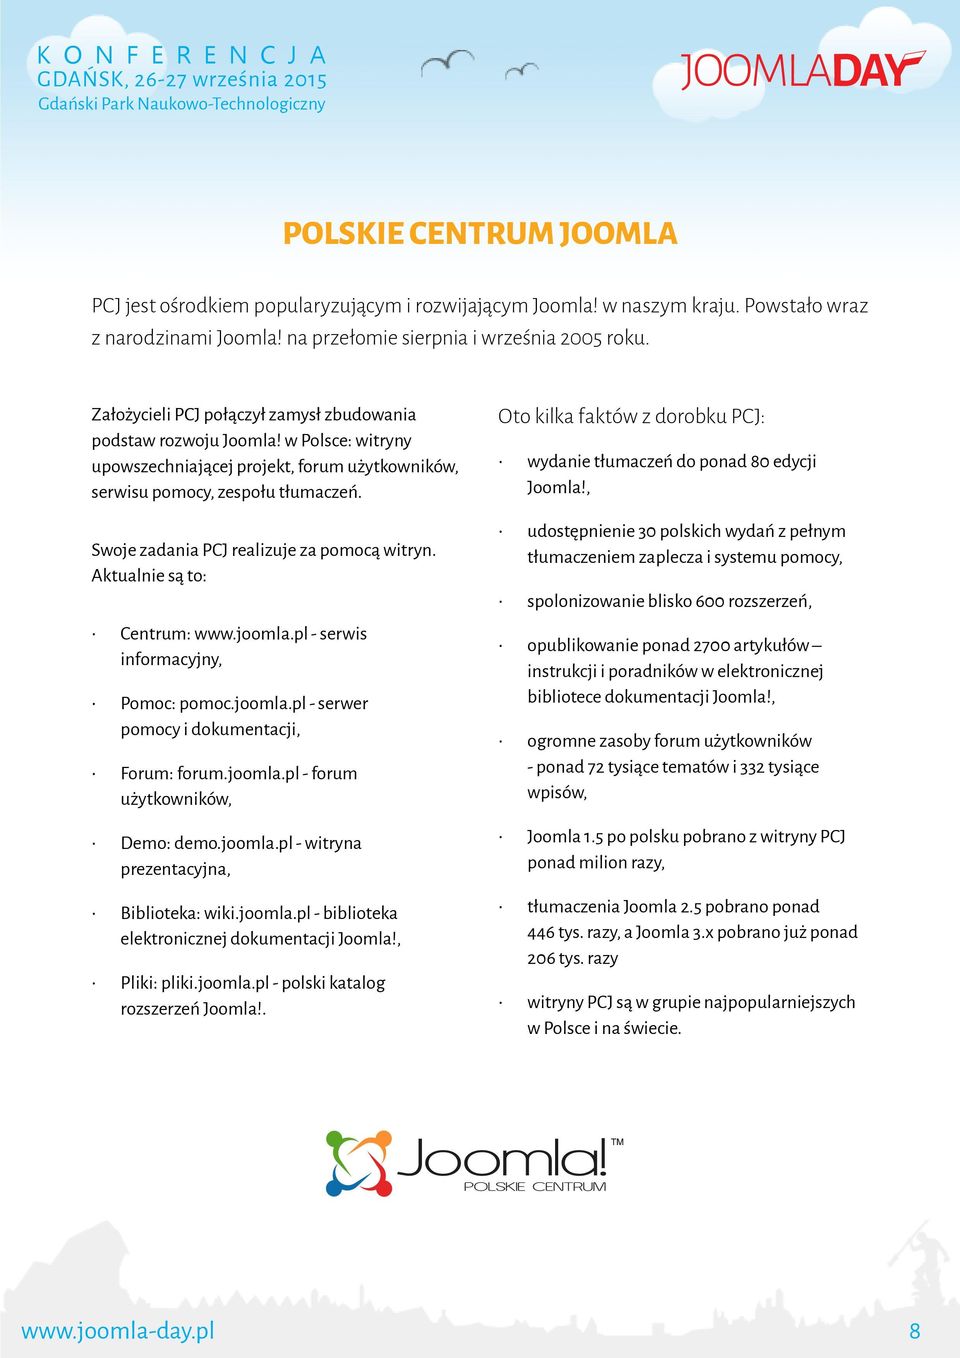 Swoje zadania PCJ realizuje za pomocą witryn. Aktualnie są to: Centrum: www.joomla.pl - serwis informacyjny, Pomoc: pomoc.joomla.pl - serwer pomocy i dokumentacji, Forum: forum.joomla.pl - forum użytkowników, Demo: demo.